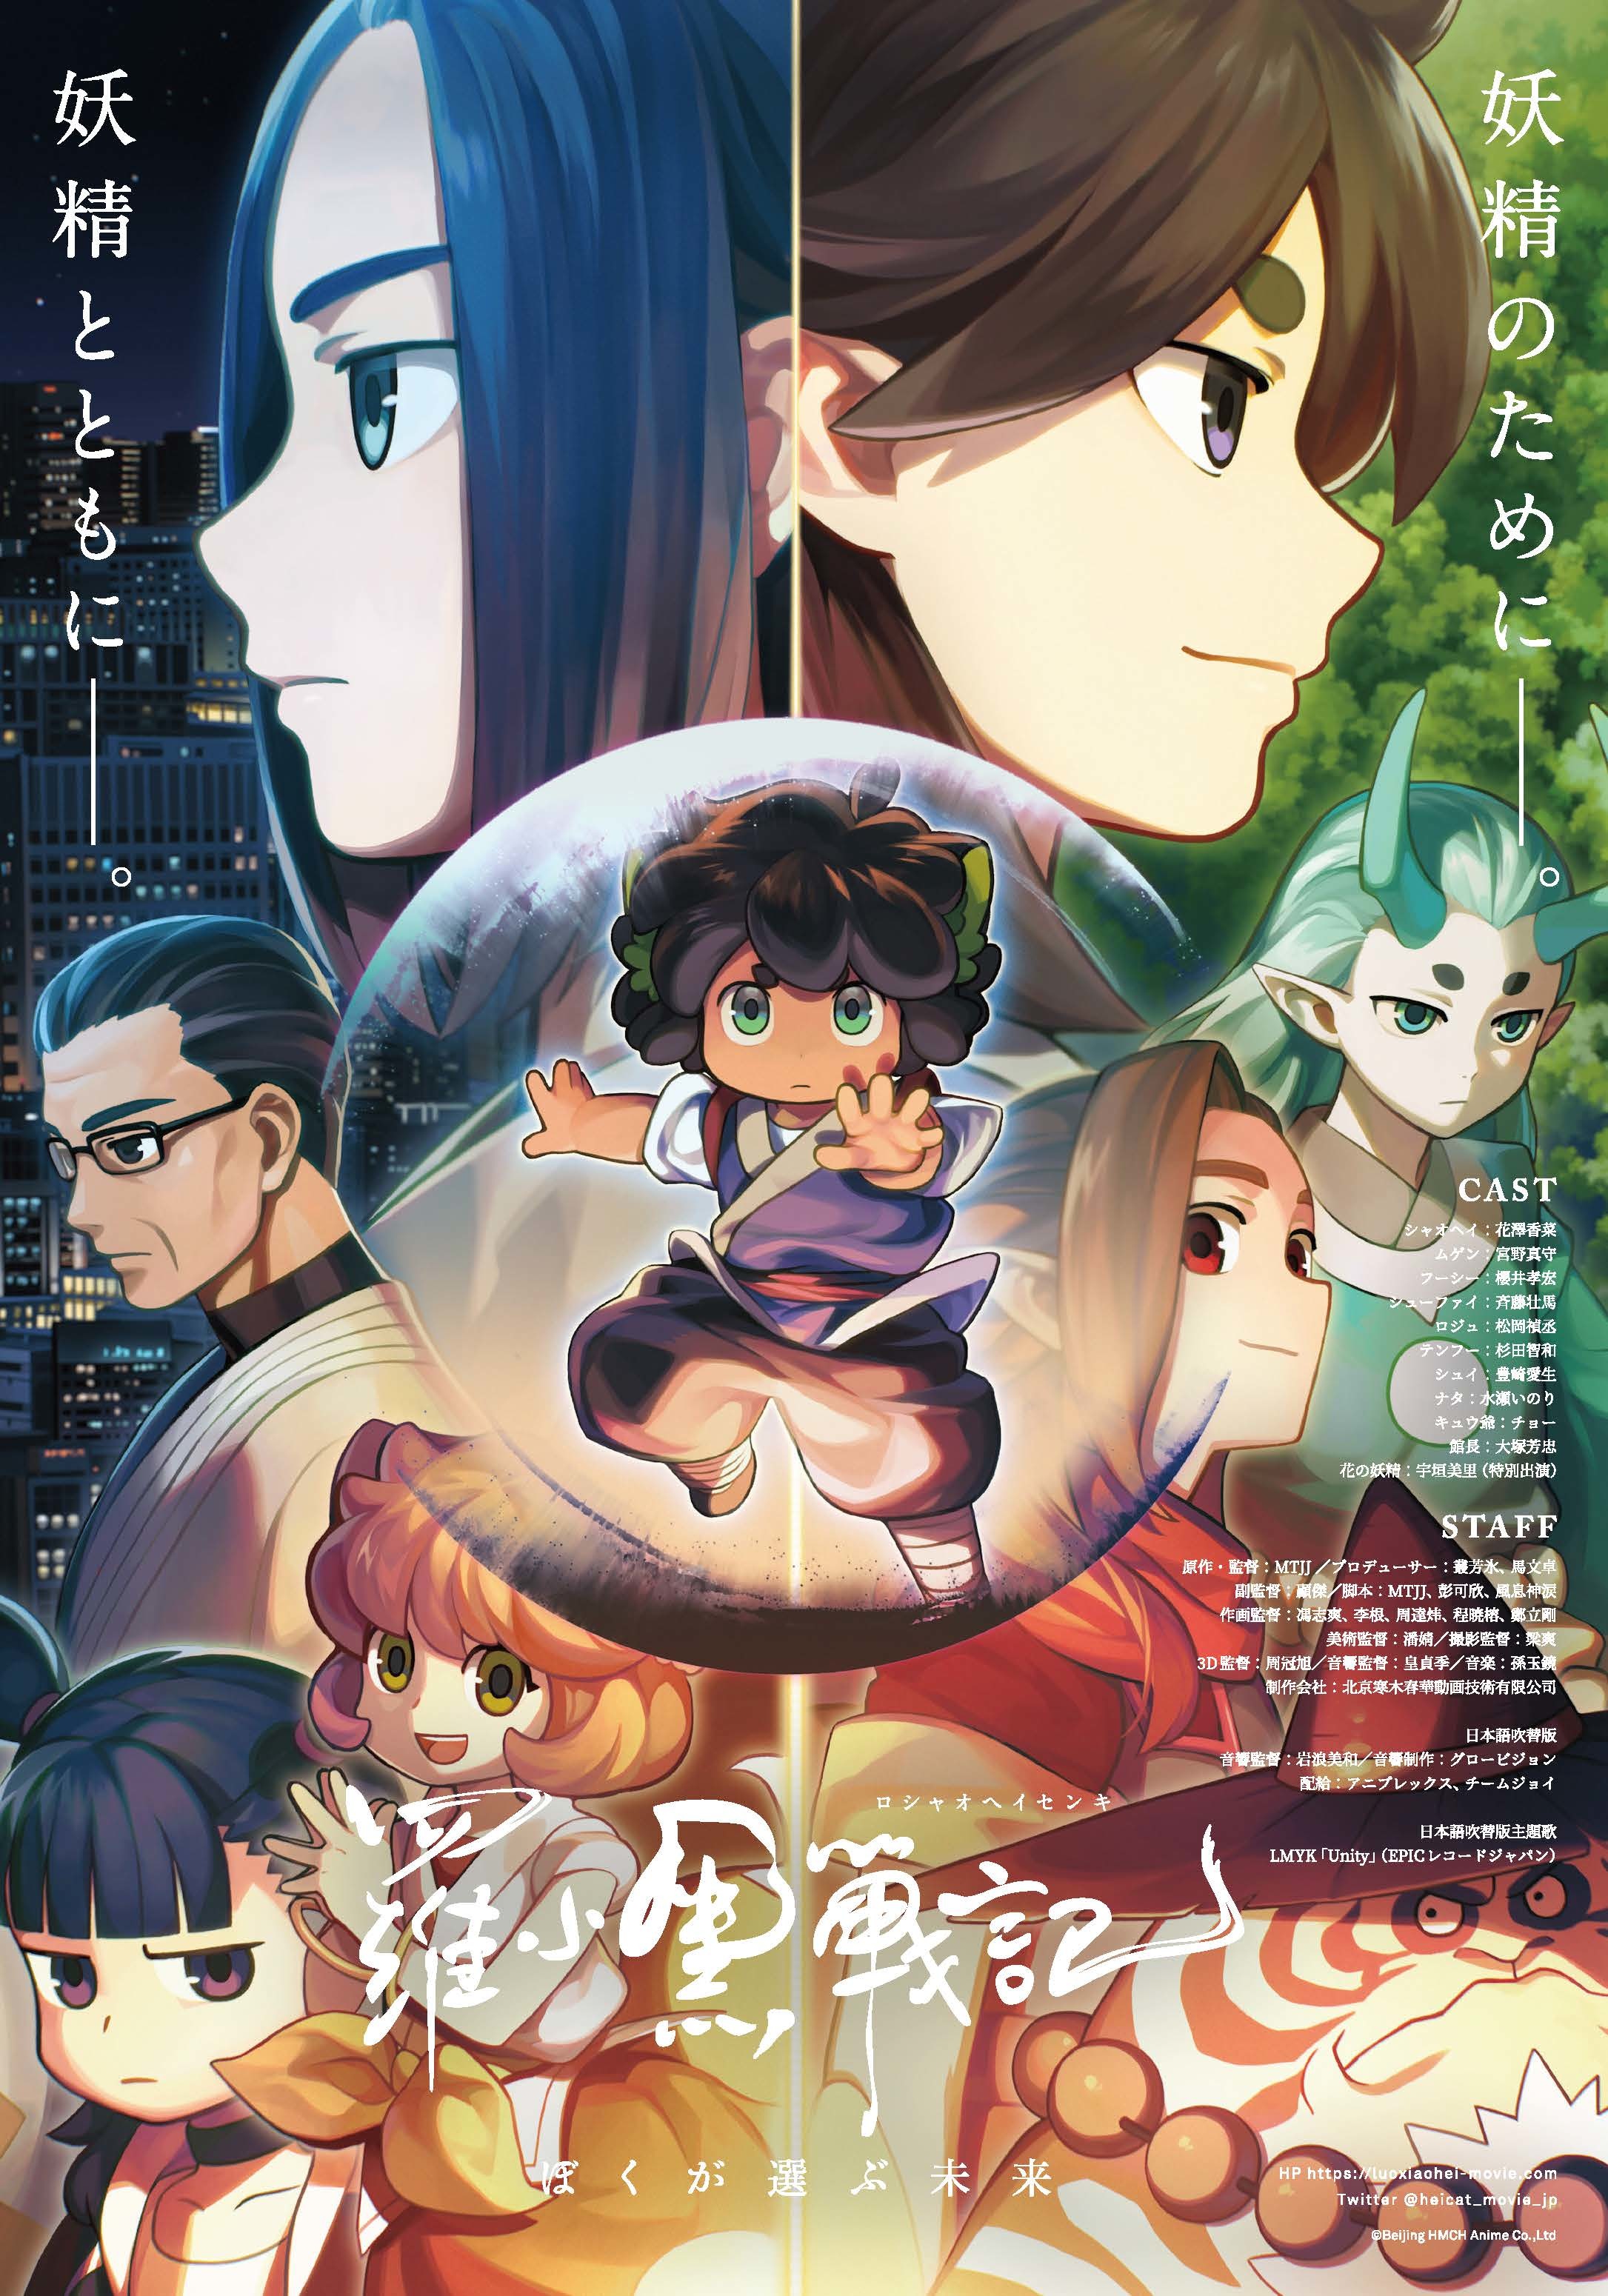 『羅小黒戦記(ロシャオヘイセンキ) ぼくが選ぶ未来』本ポスター (C) Beijing HMCH Anime Co.,Ltd